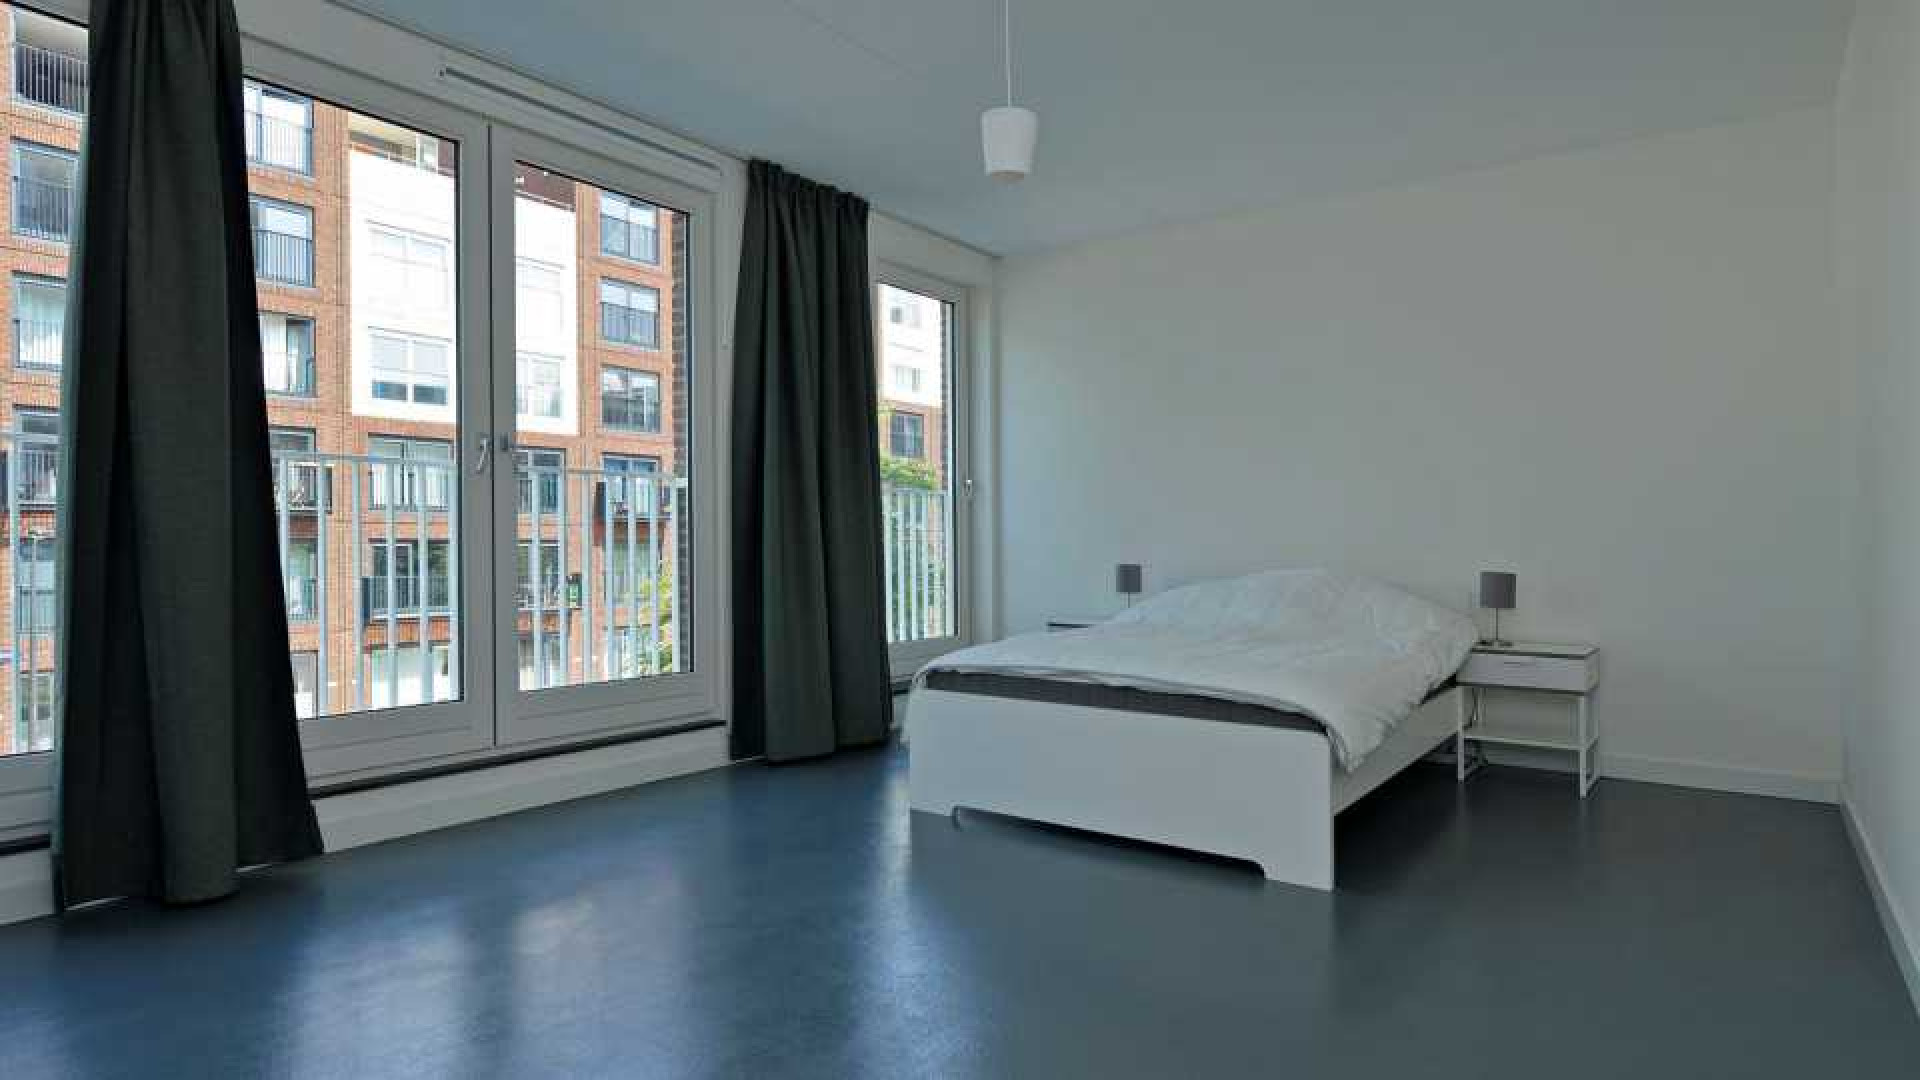 PSV voetballer Steven Bergwijn koopt luxe appartement in Amsterdam 12